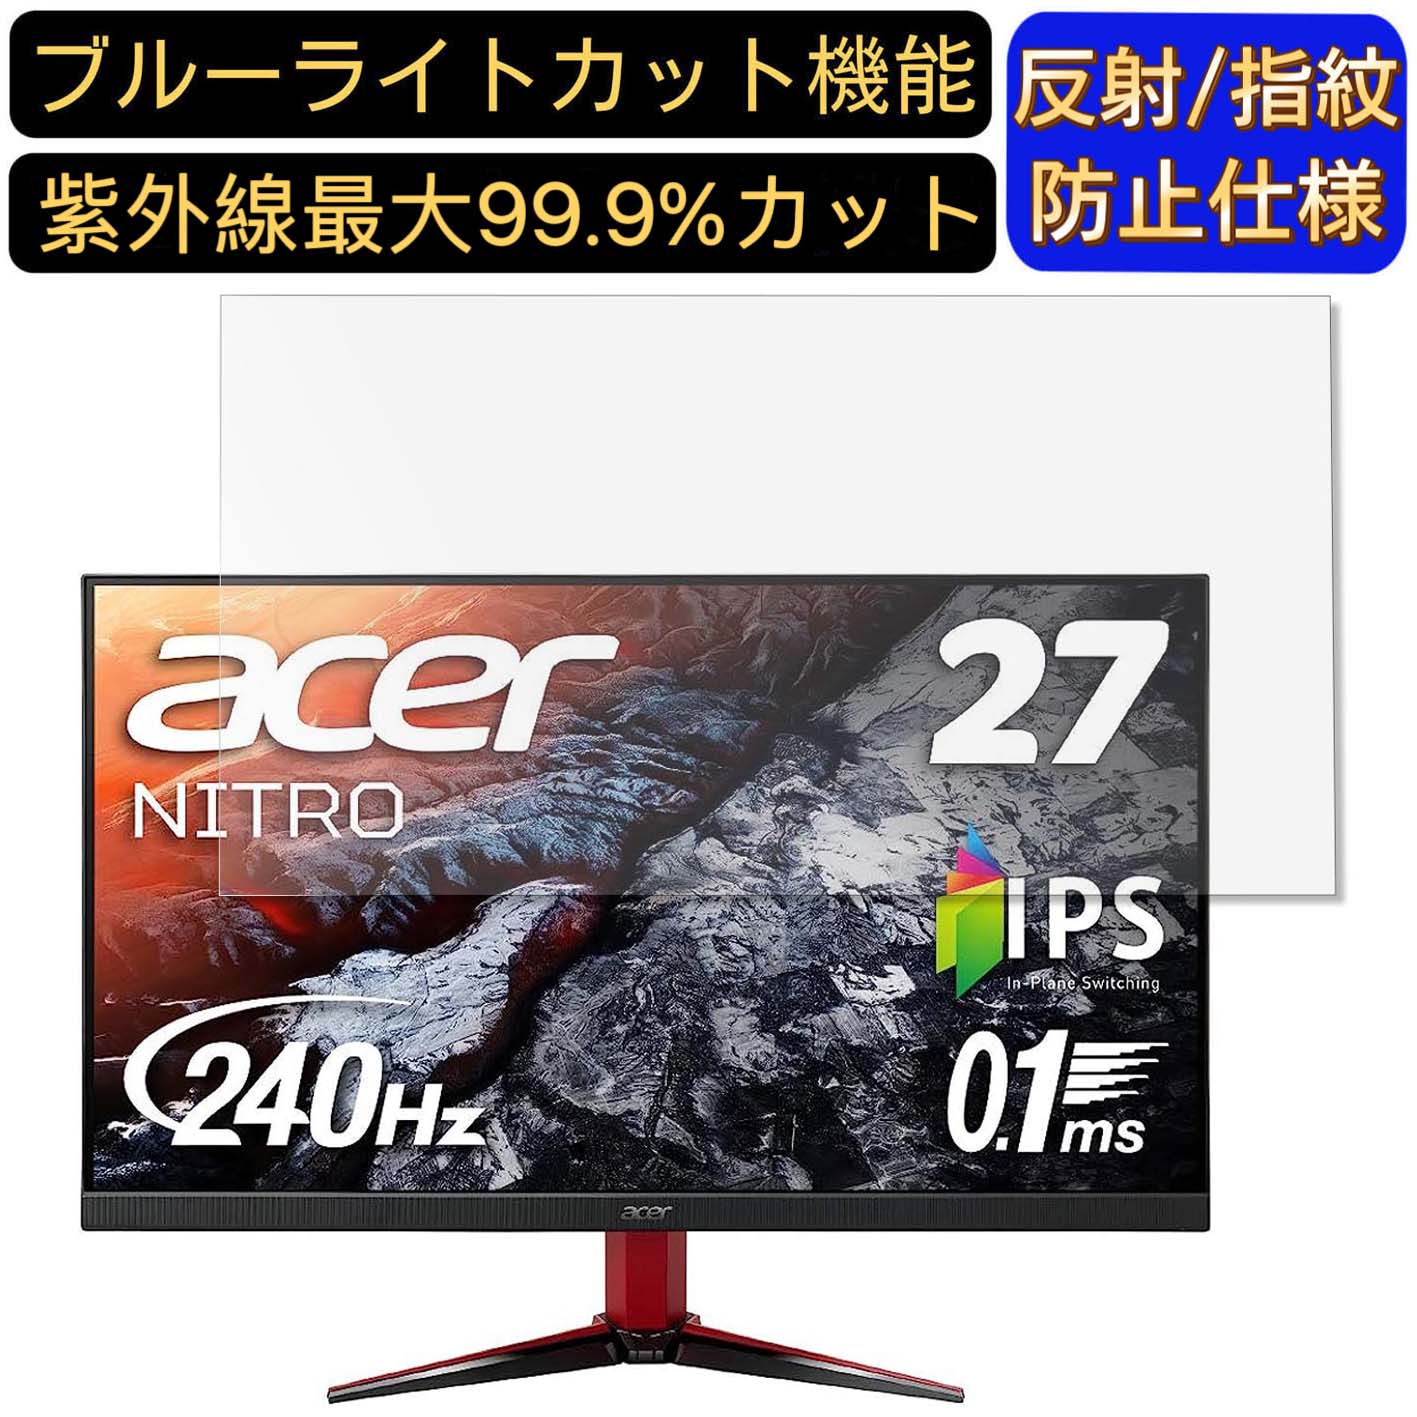 【ポイント2倍】Acer NITRO VG272Xbmiipx 27